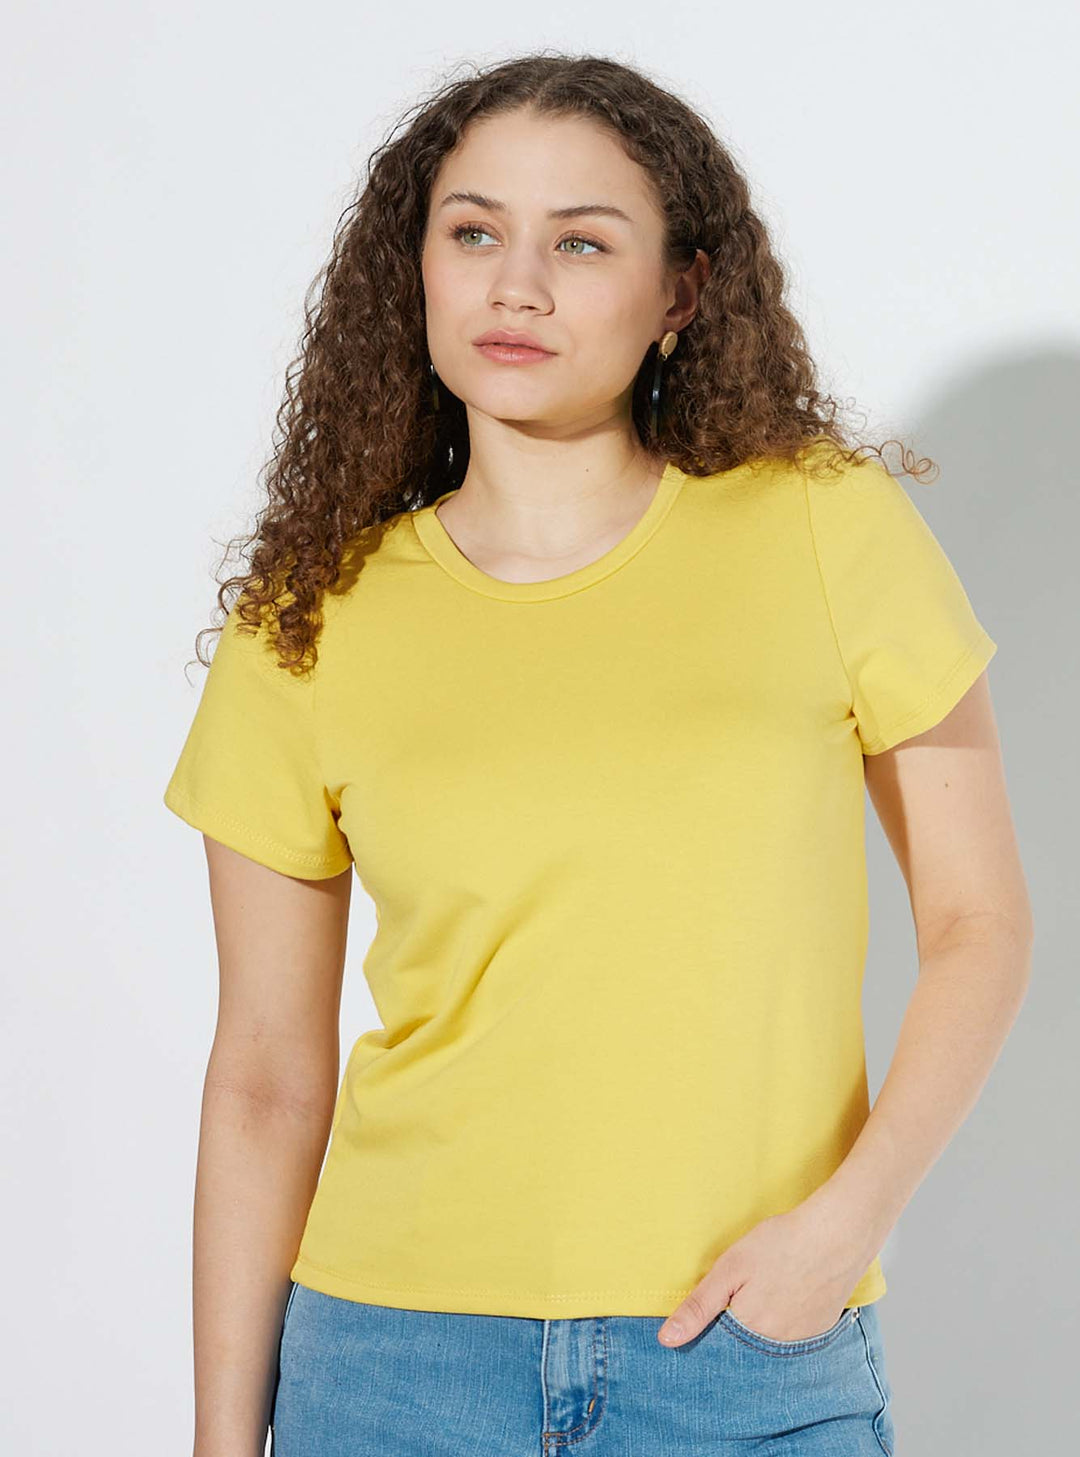 Chrysanthemum T-Shirt / Yellow